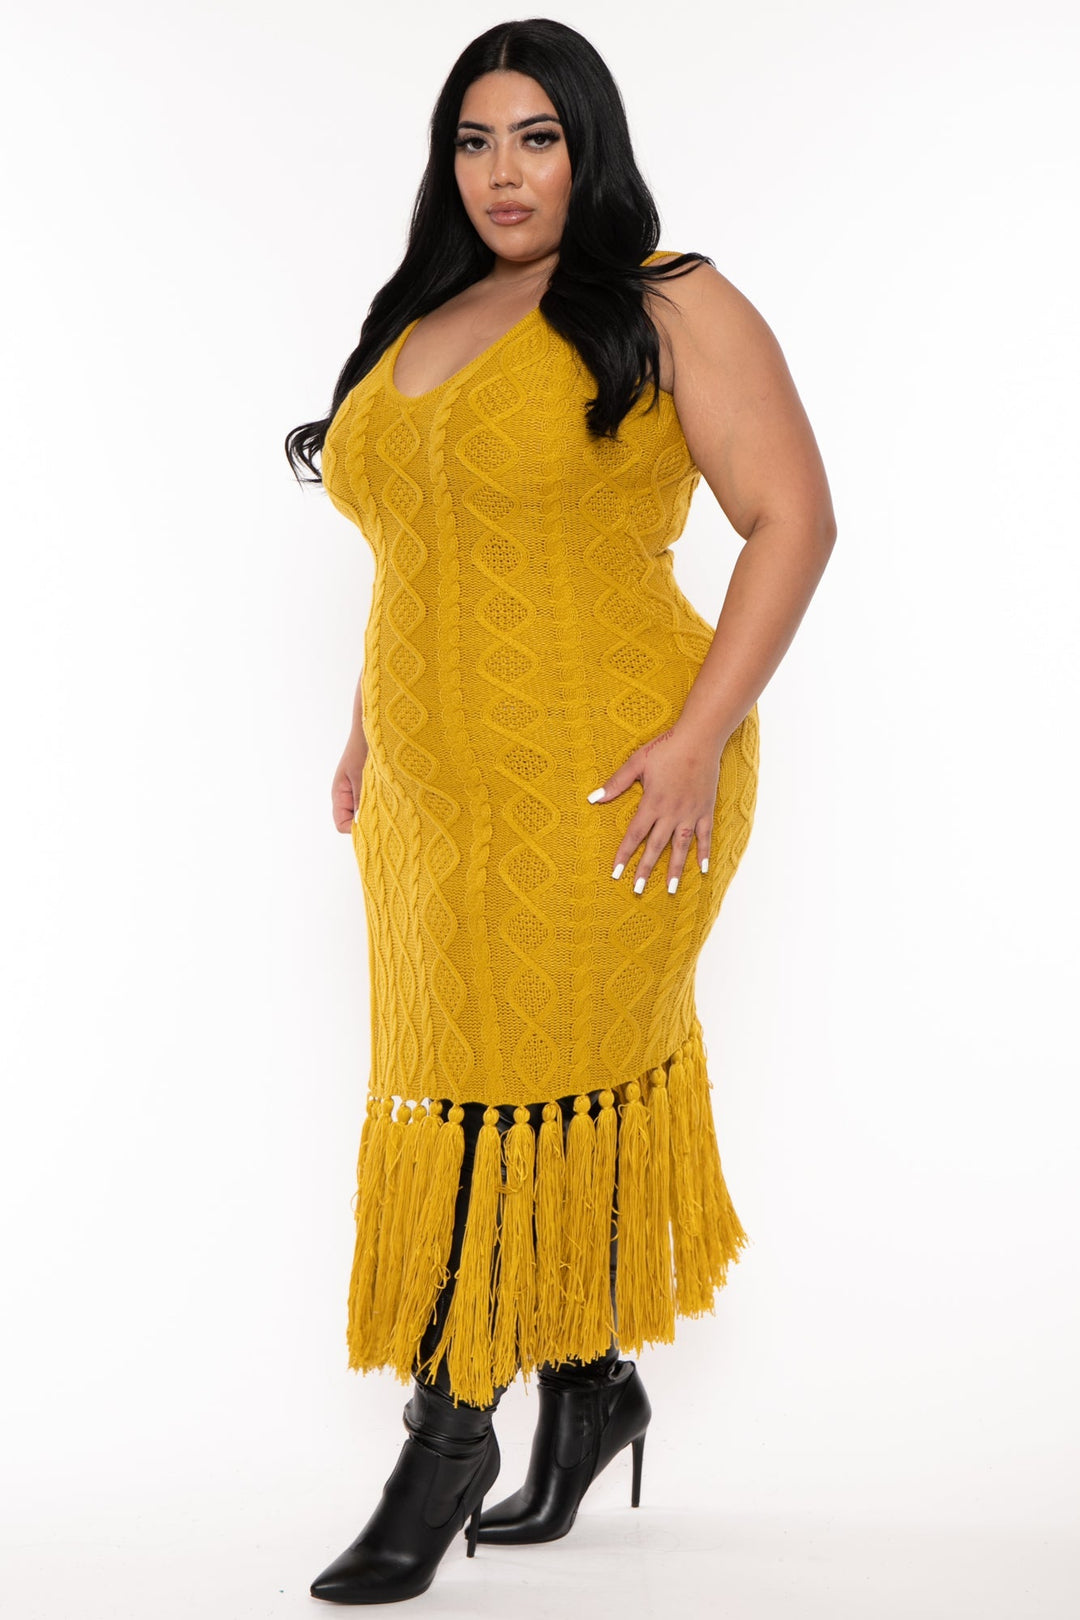 H & H FASHION Dresses Plus Size Kiarra Knit Tassel   Dress - Mustard